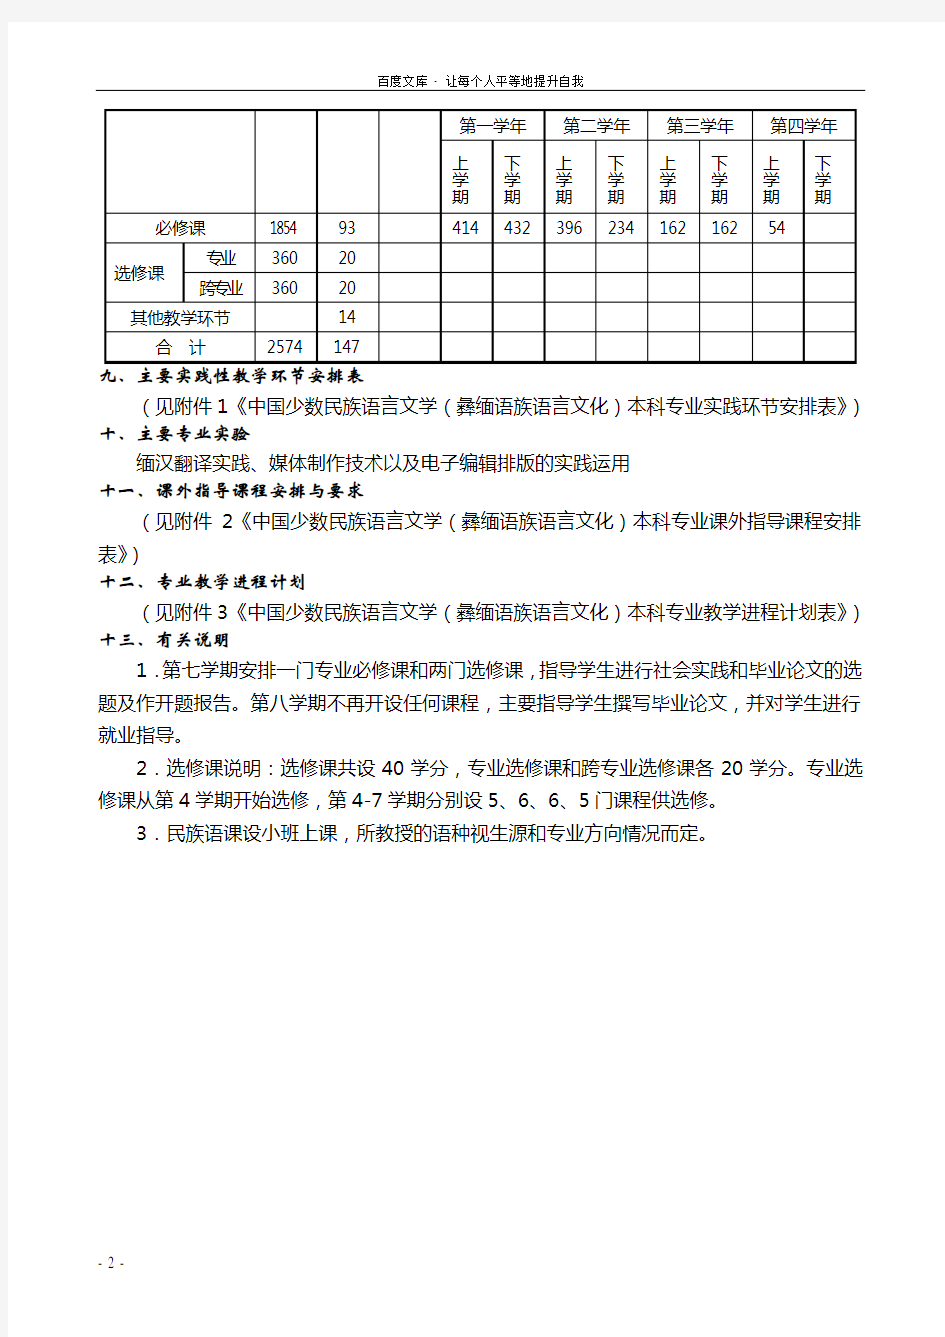 中国少数民族语言文学(彝缅语族语言文化)本科专业培养方案